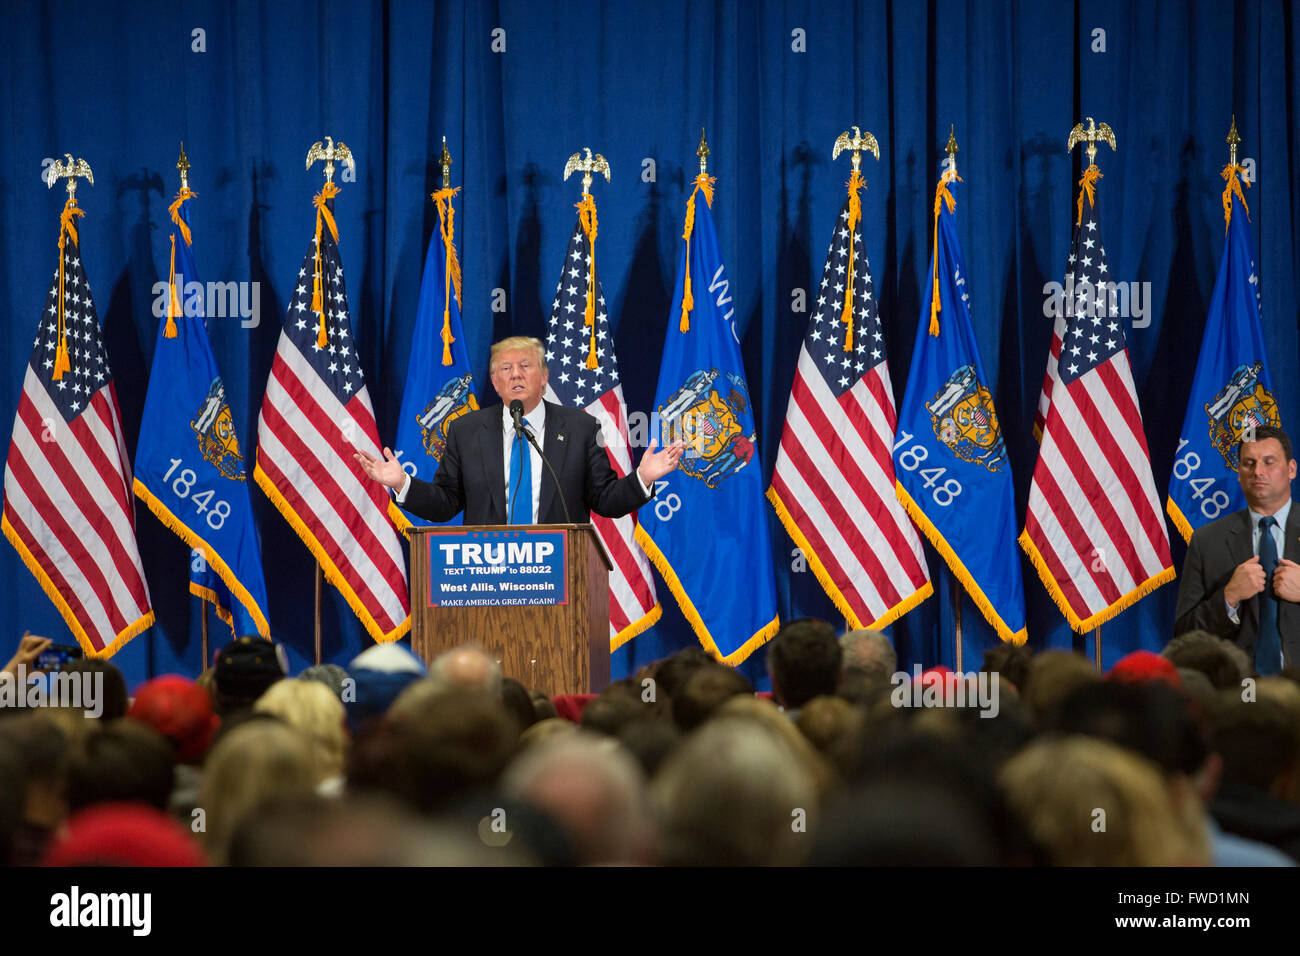 West Allis, Wisconsin, Estados Unidos de América - 3 Abril 2016 - Donald Trump campañas para la nominación presidencial republicana. Crédito: Jim West/Alamy Live News Foto de stock